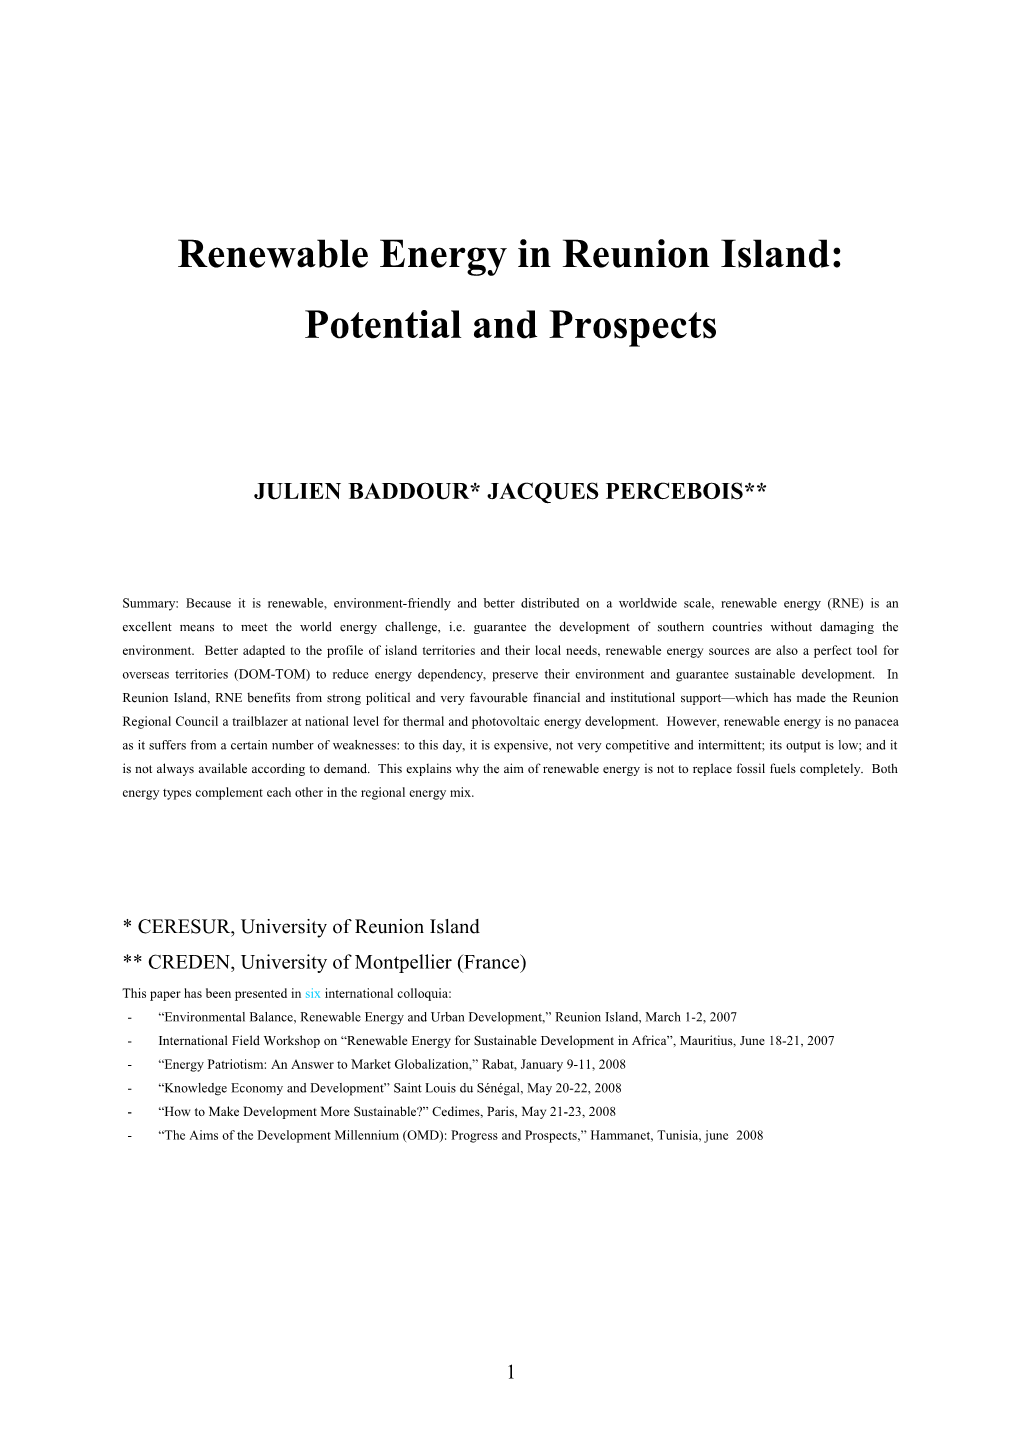 Les Énergies Renouvelables À La Réunion : Bilan Et Perspectives